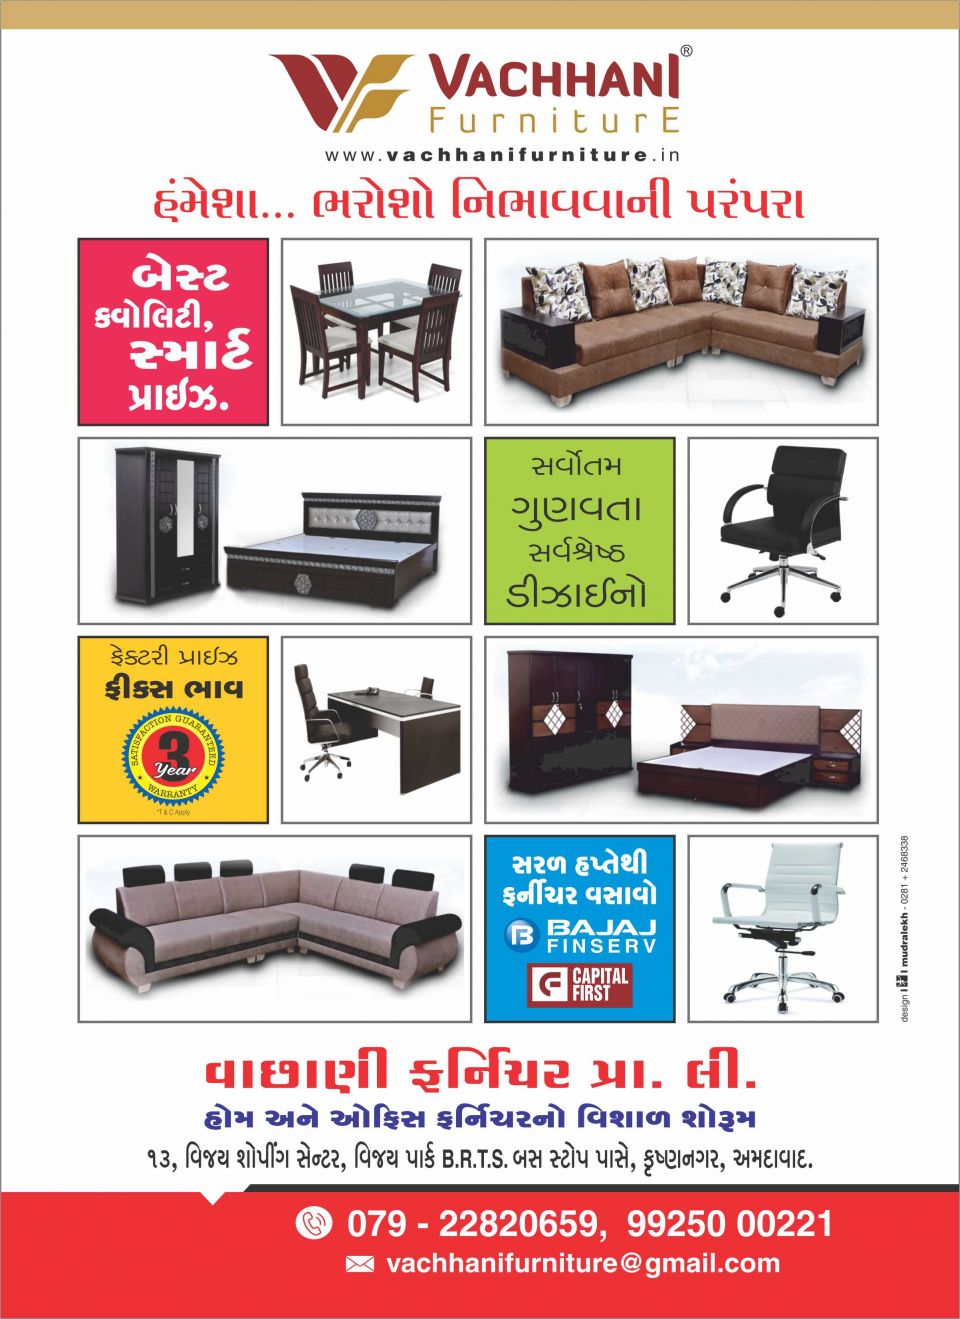 Vachhani Furniture Pvt Ltd